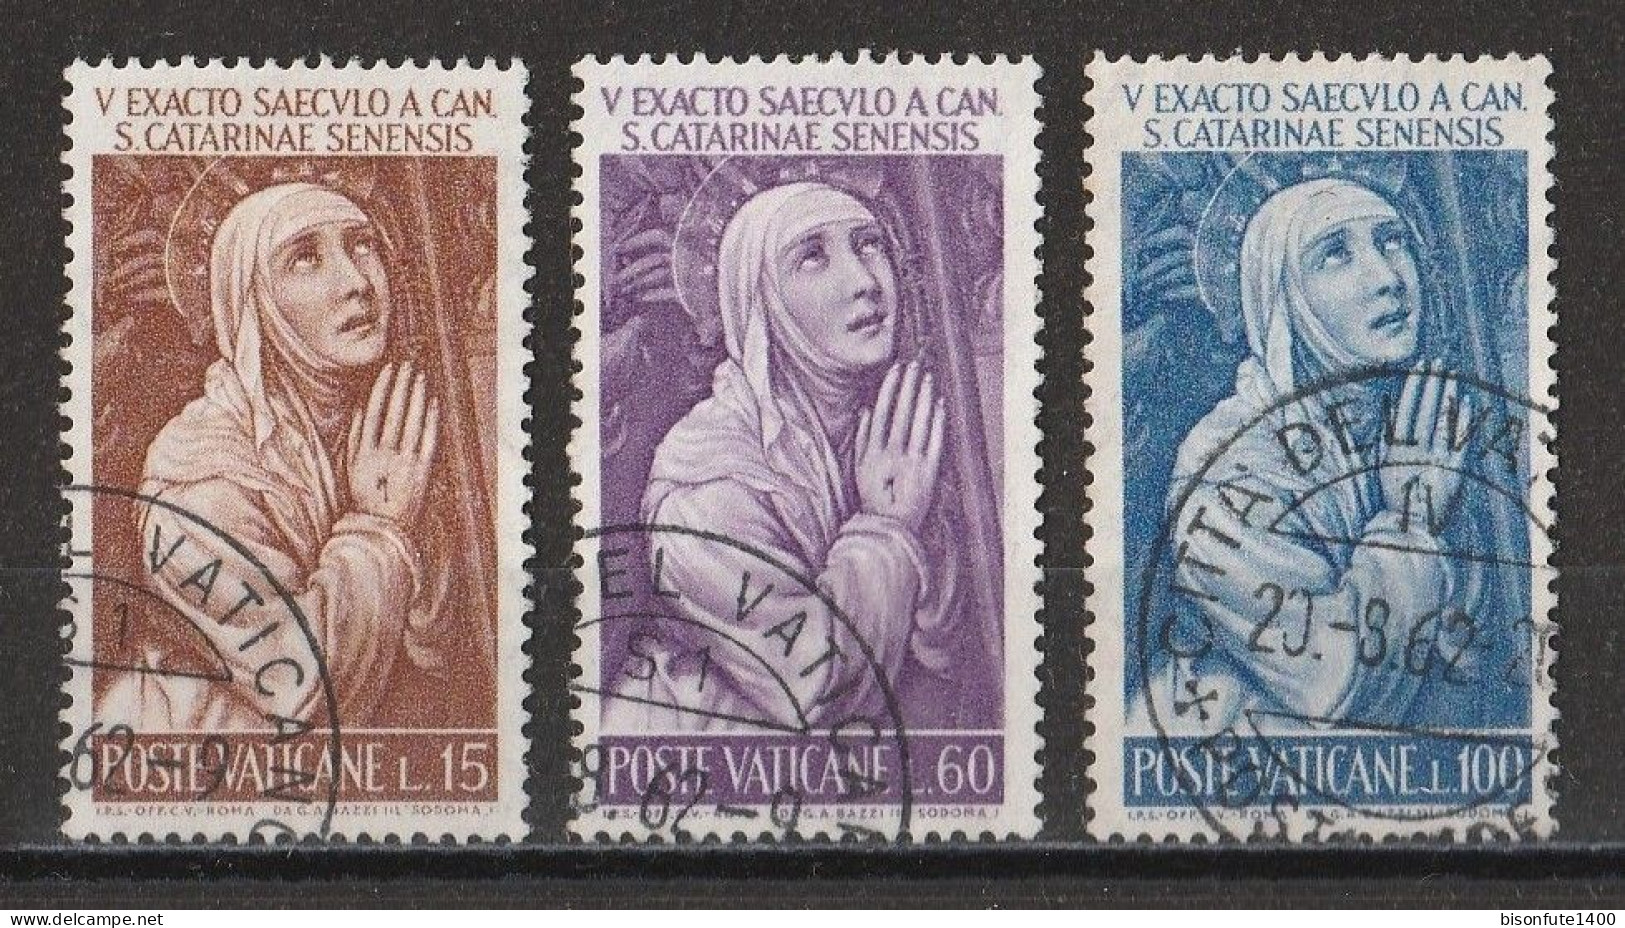 Vatican 1962 : Timbres Yvert & Tellier N° 344 - 348 - 349 - 350 - 351 - 352 - 353 - 354 Et 355 Oblitérés. - Gebruikt